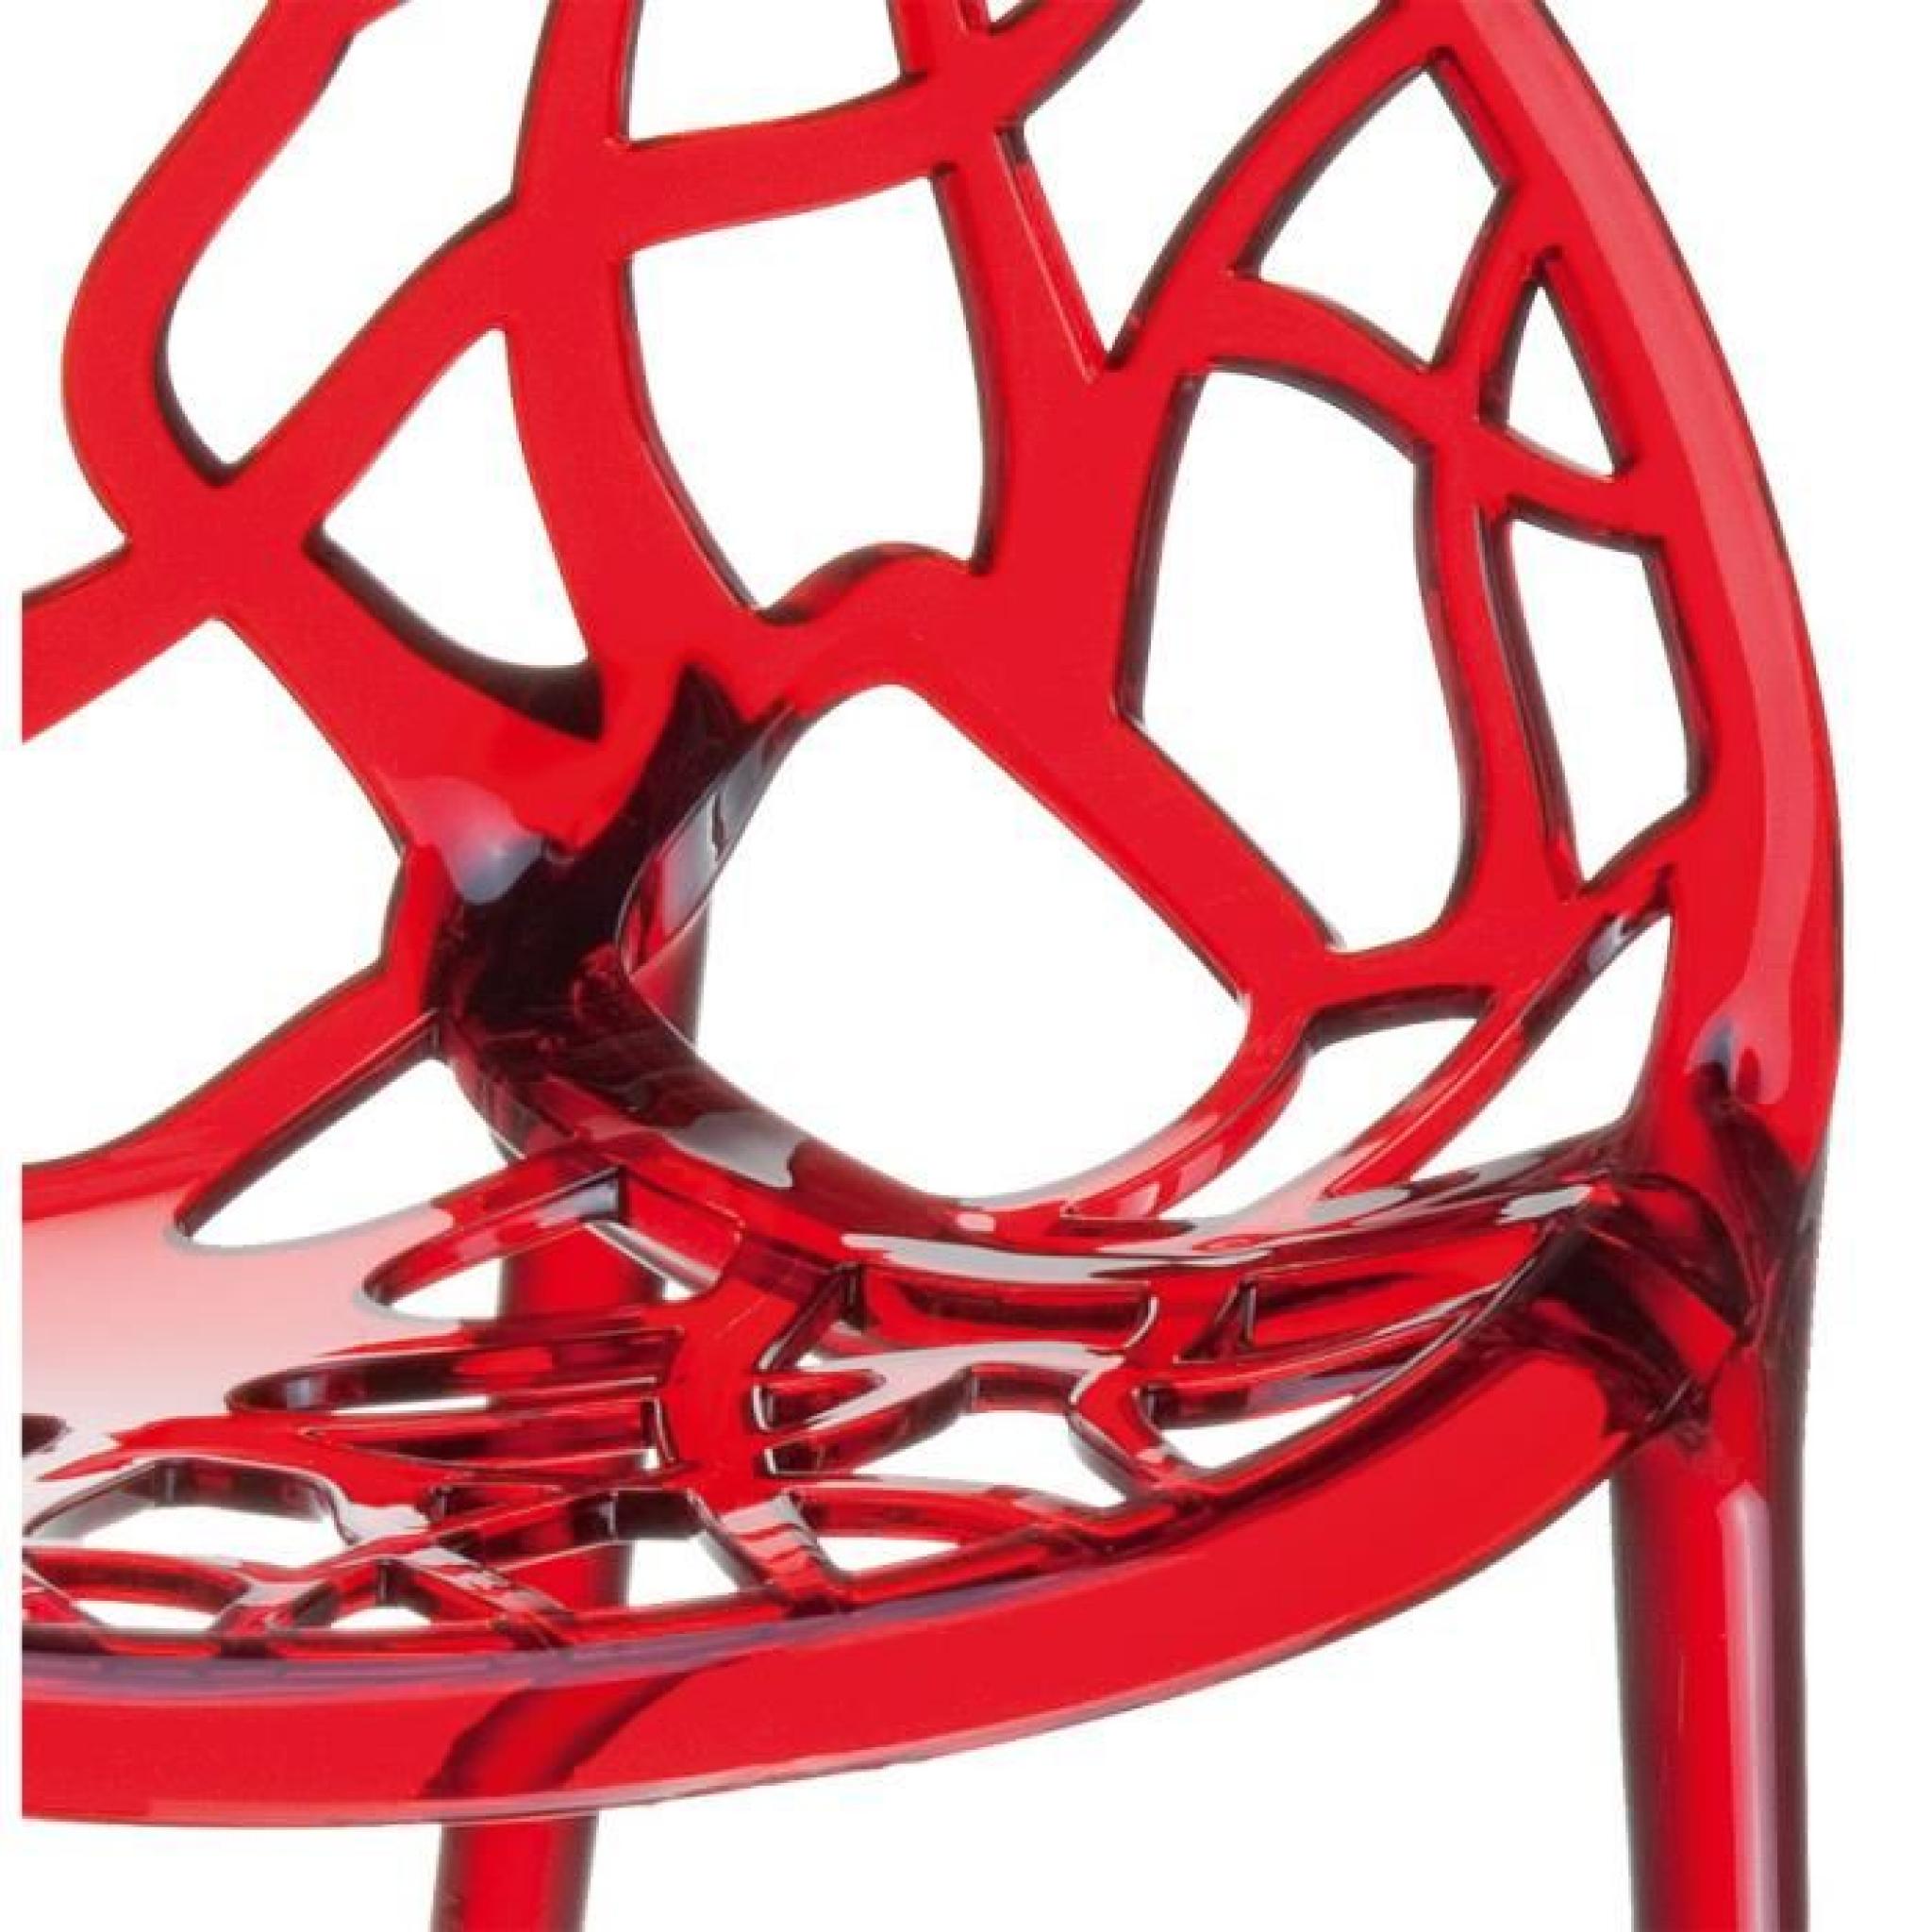 Chaise moderne ' GEO ' rouge transparent en pol... pas cher